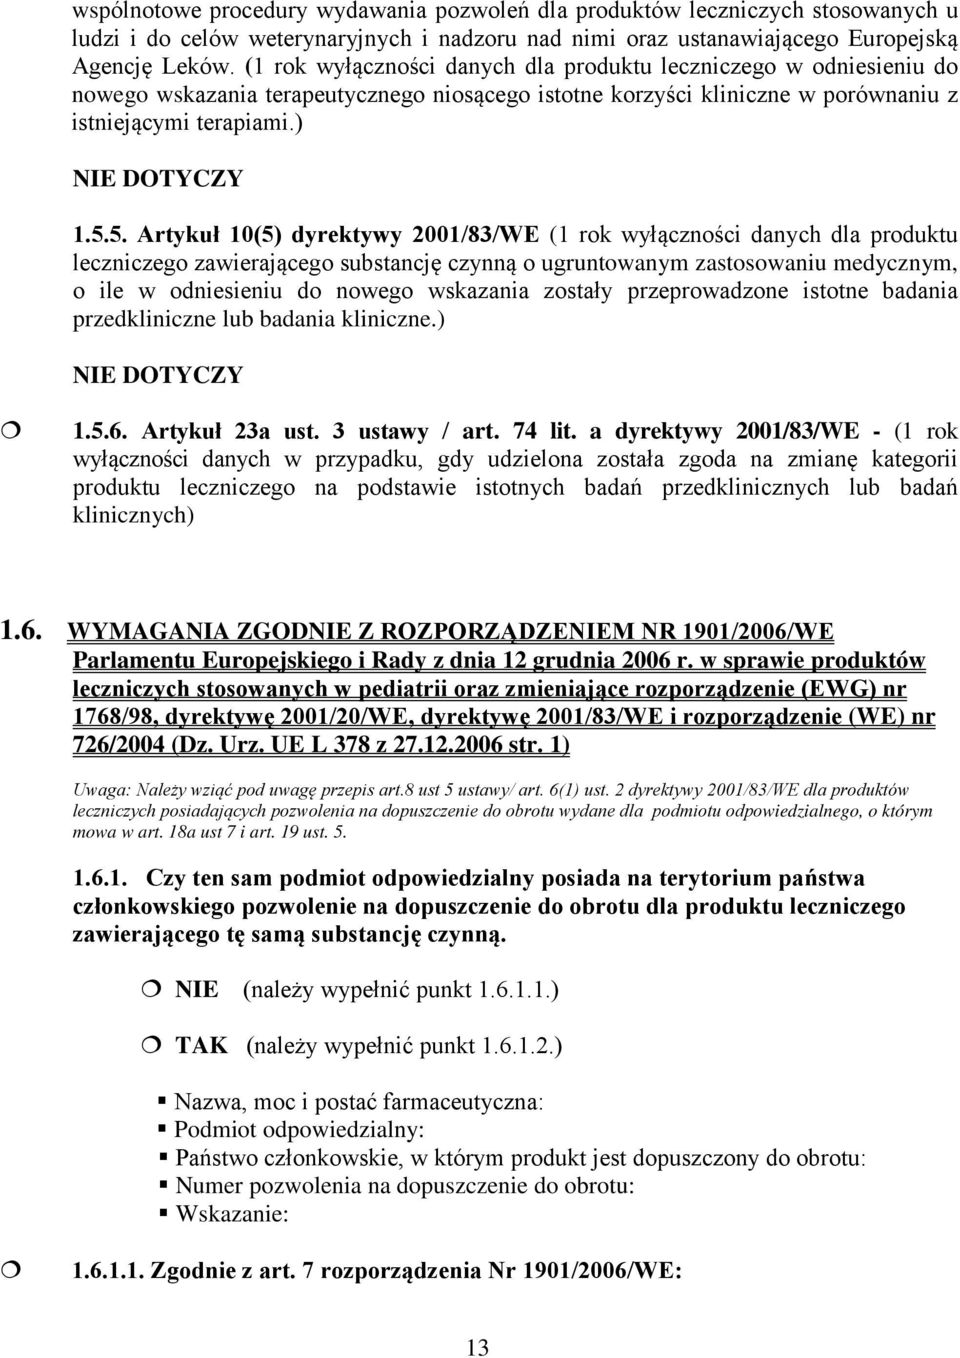 5. Artykuł 10(5) dyrektywy 2001/83/WE (1 rok wyłączności danych dla produktu leczniczego zawierającego substancję czynną o ugruntowanym zastosowaniu medycznym, o ile w odniesieniu do nowego wskazania